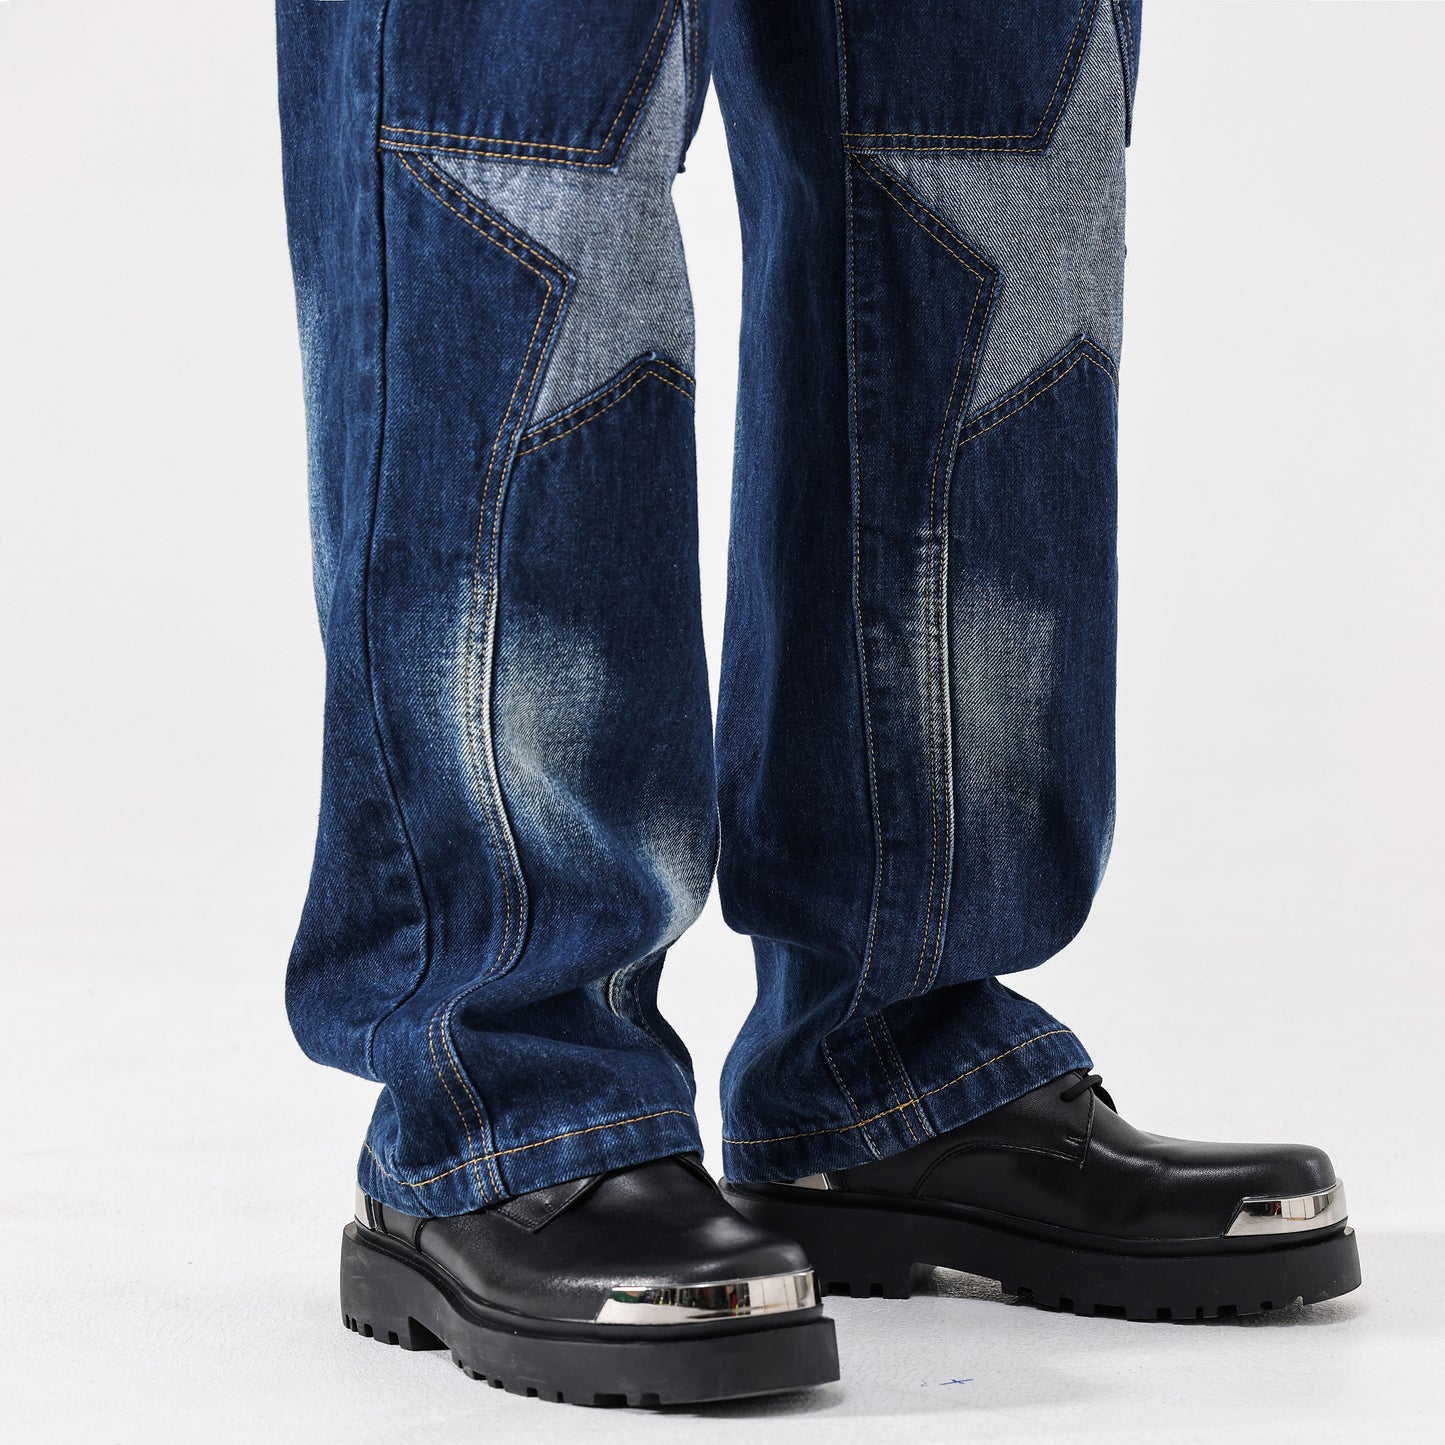 【23s September.】Star Pattern Denim Jeans